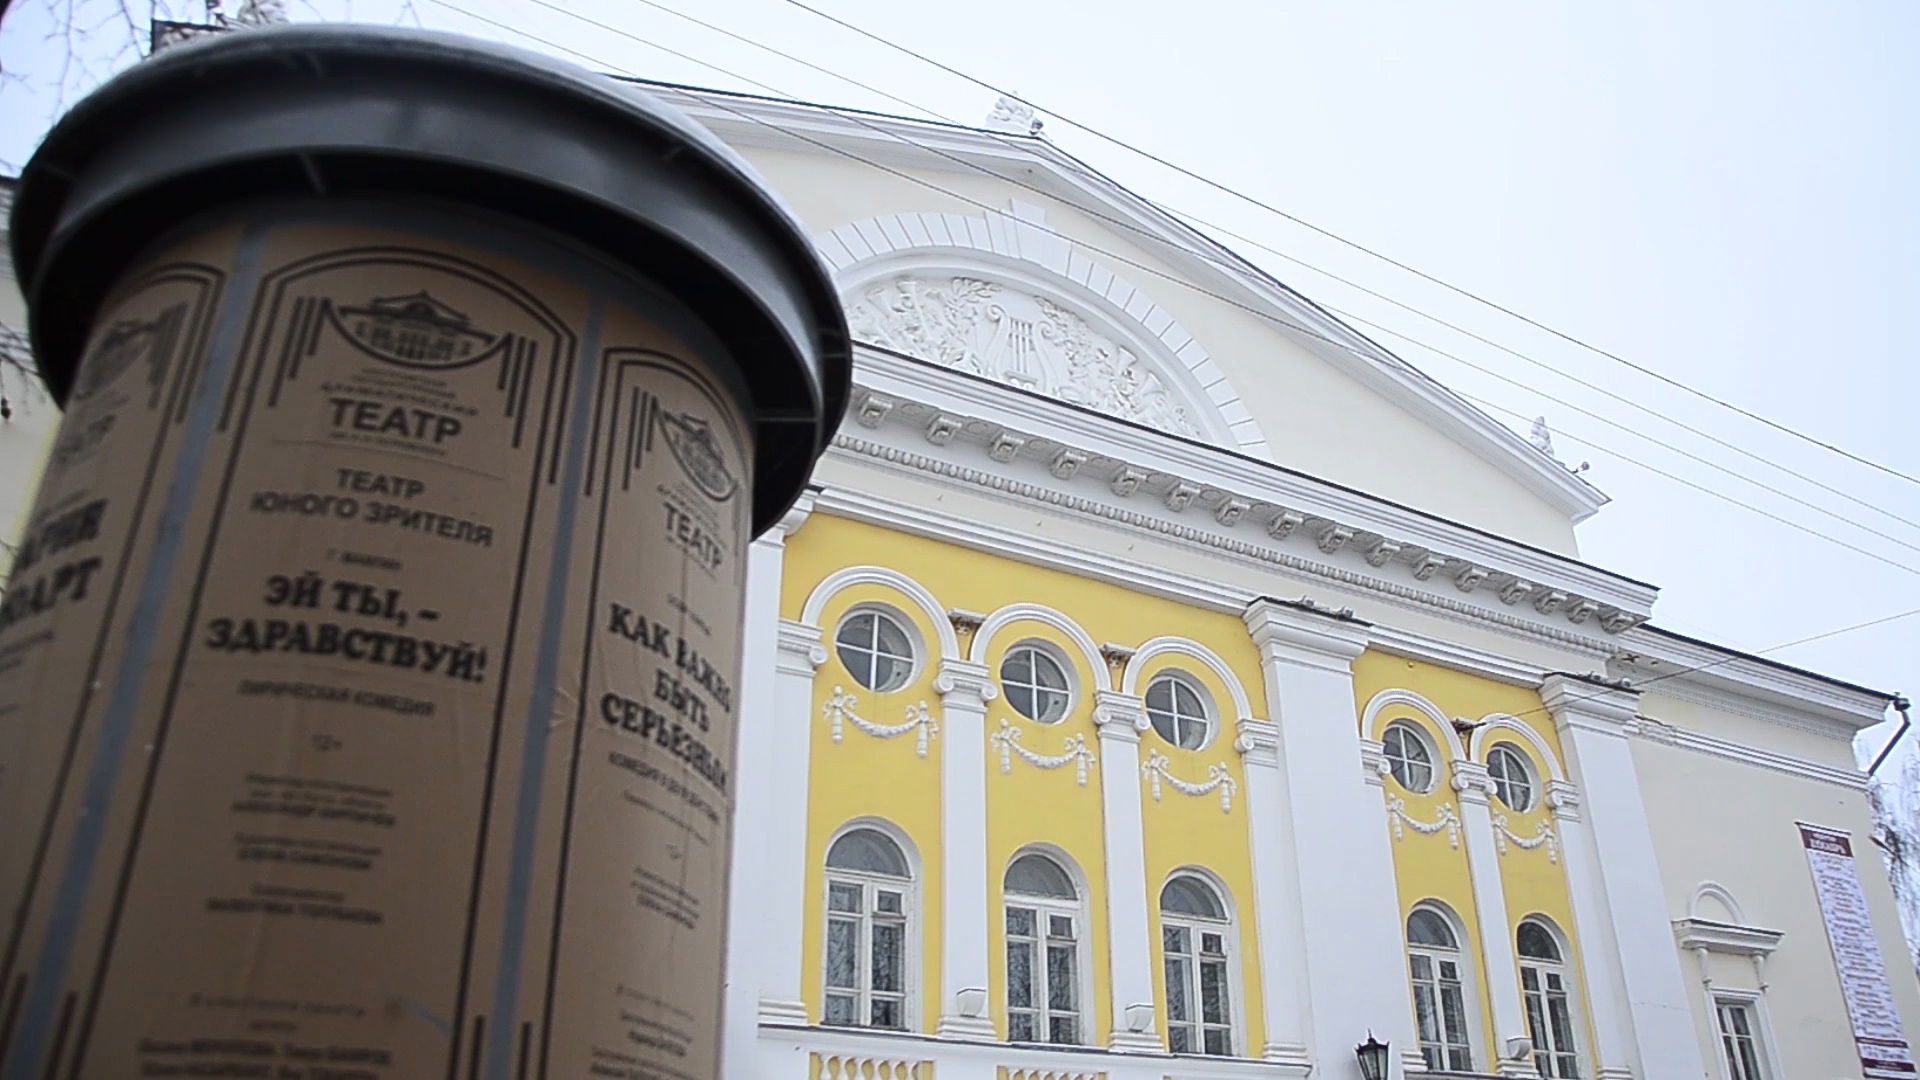 Лермонтовским «Маскарадом» закрывает в Костроме тематический год Драмтеатр имени А.Н. Островского
